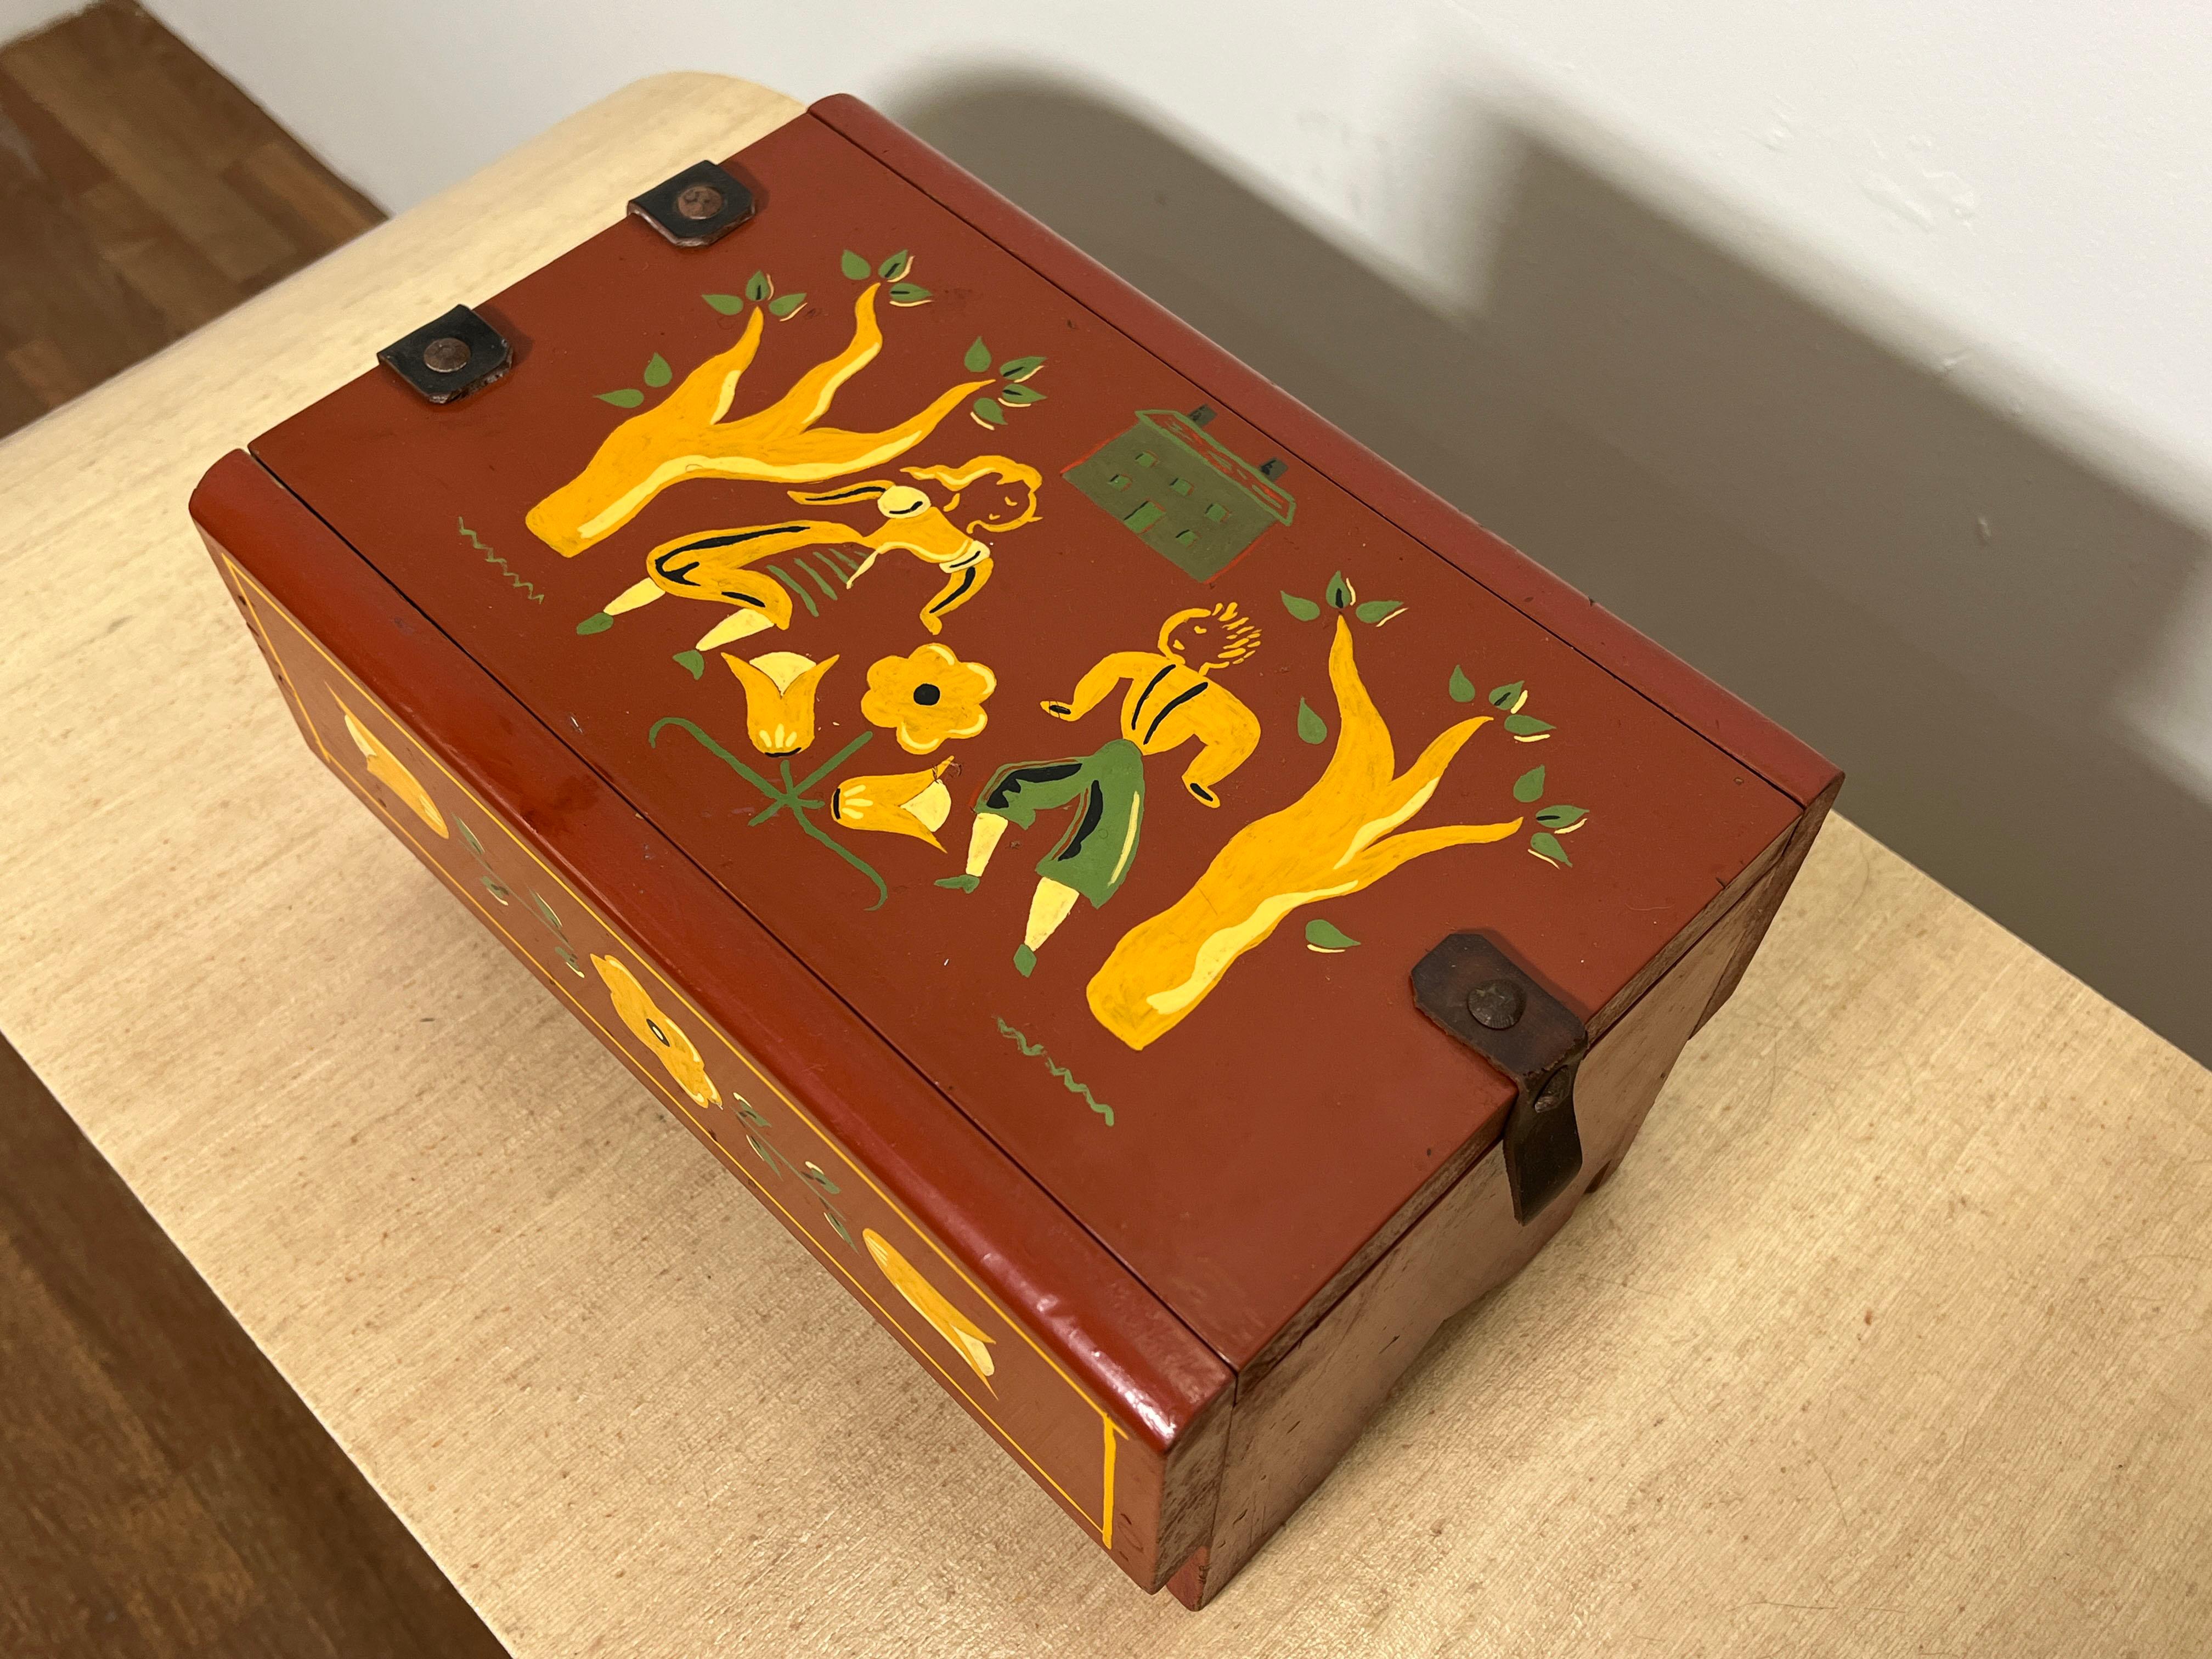  Boîte à bibelots primitive décorée à la main dans le style du célèbre artiste folklorique de Provincetown Peter Hunt, vers les années 1940.  Le Label intérieur humoristique indique qu'il s'agit d'un 